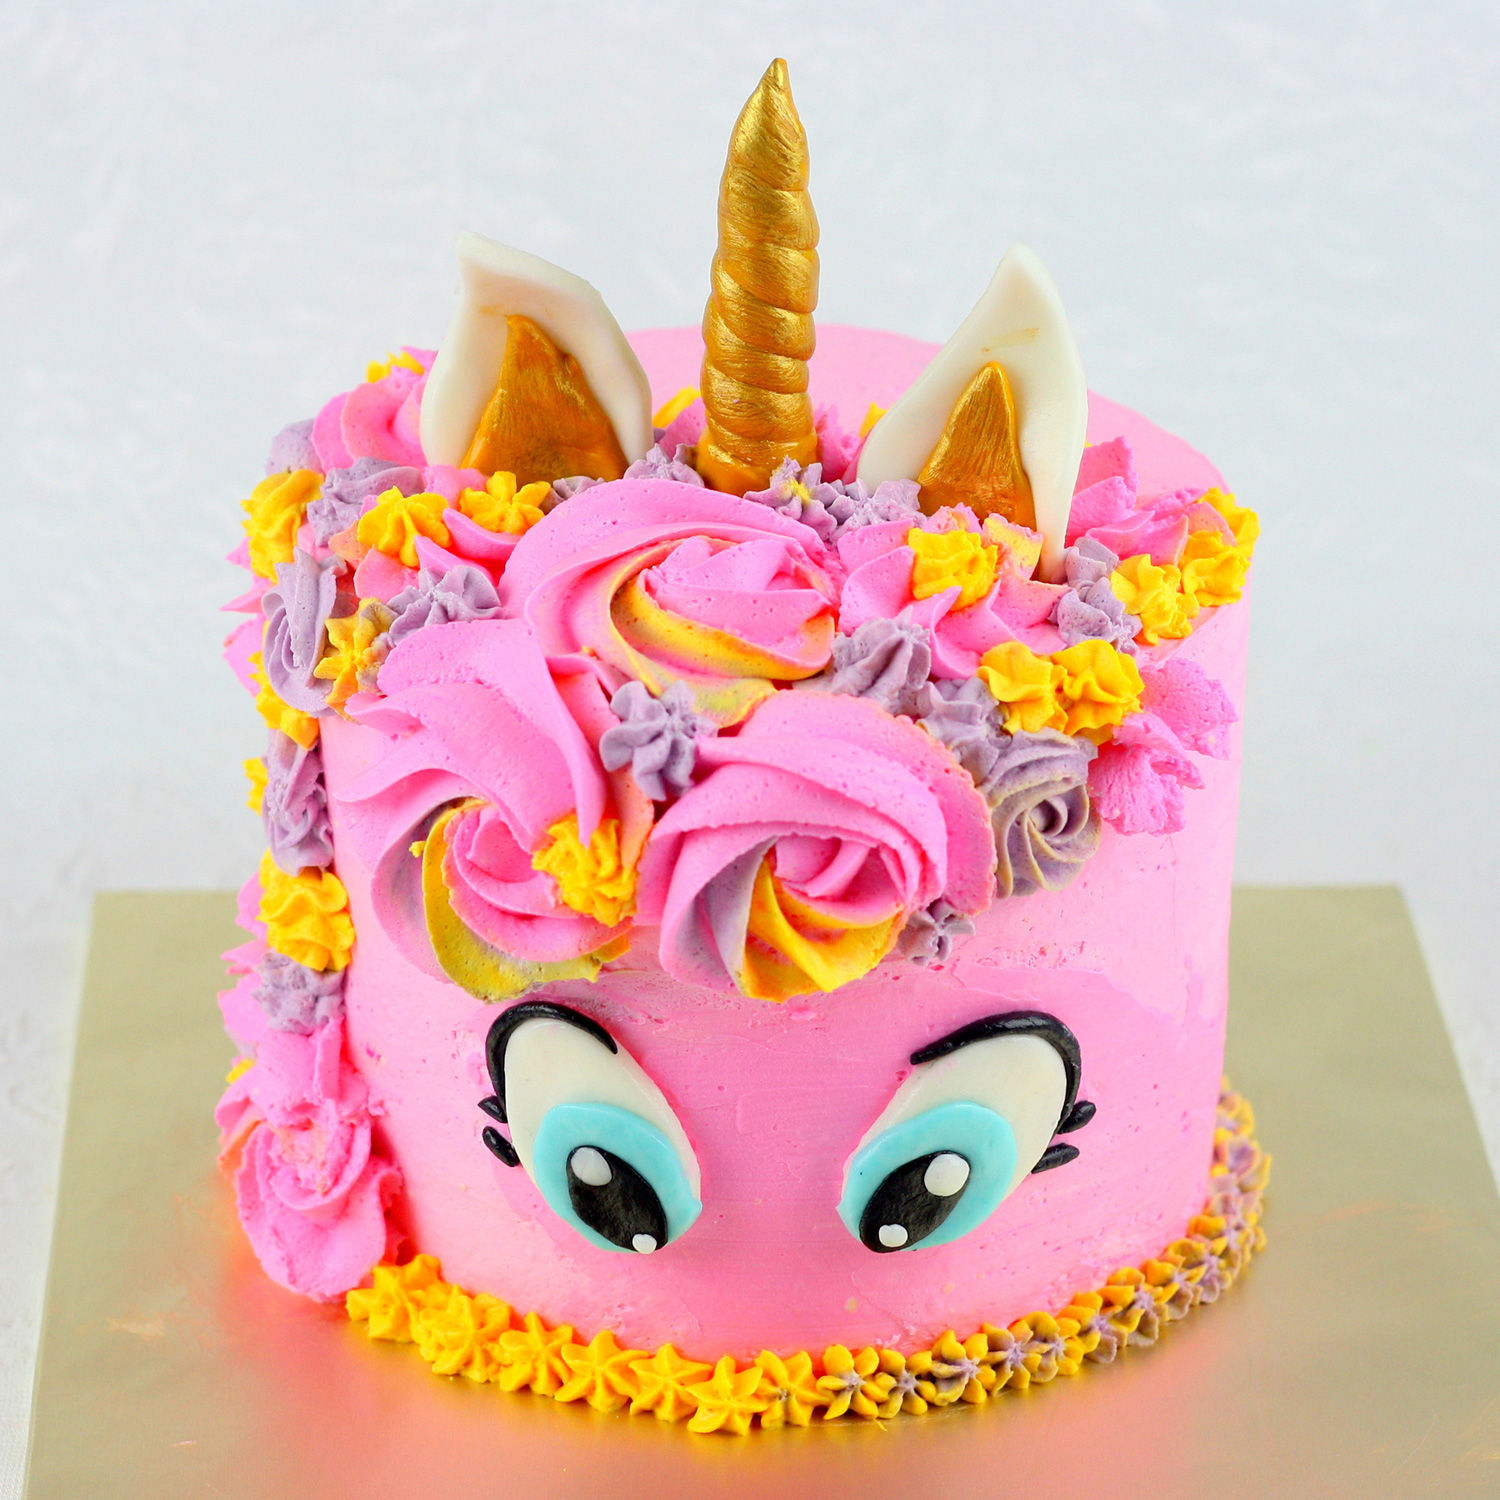 Buy/Send Pink Unicorn Chocolate Cake- 1 Kg Online- Ferns N Petals